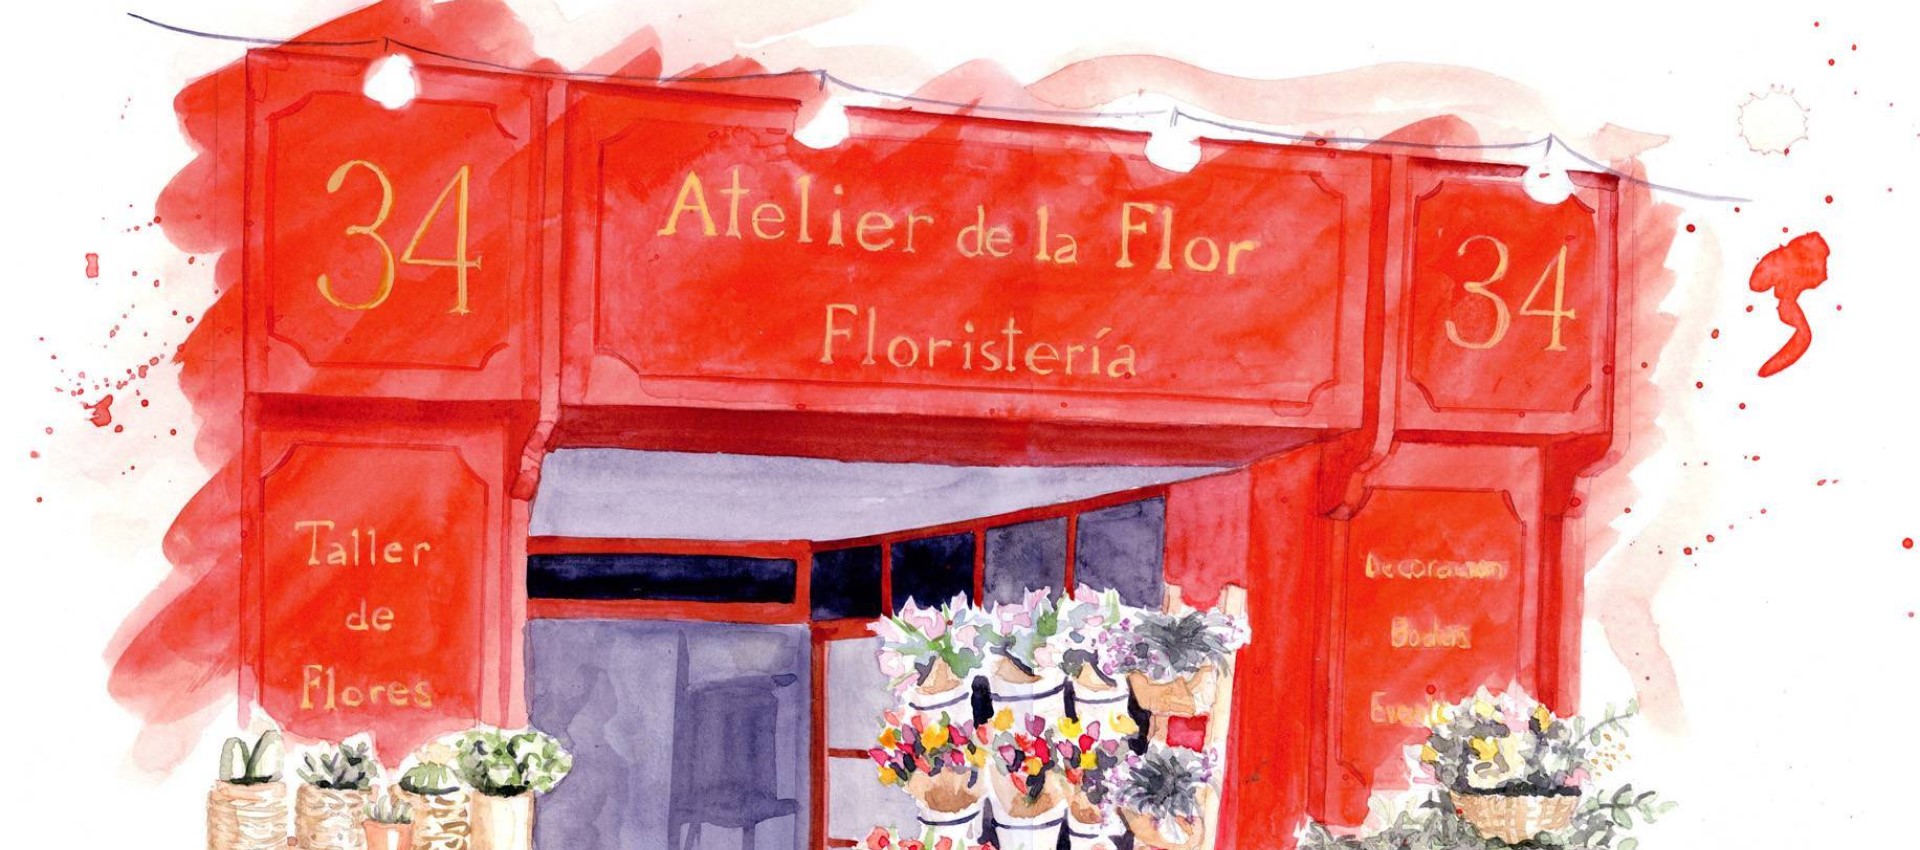 Atelier de la Flor, der erfolgreichste ort für den verkauf von blumen, workshops und die dekoration von veranstaltungen in Valencia